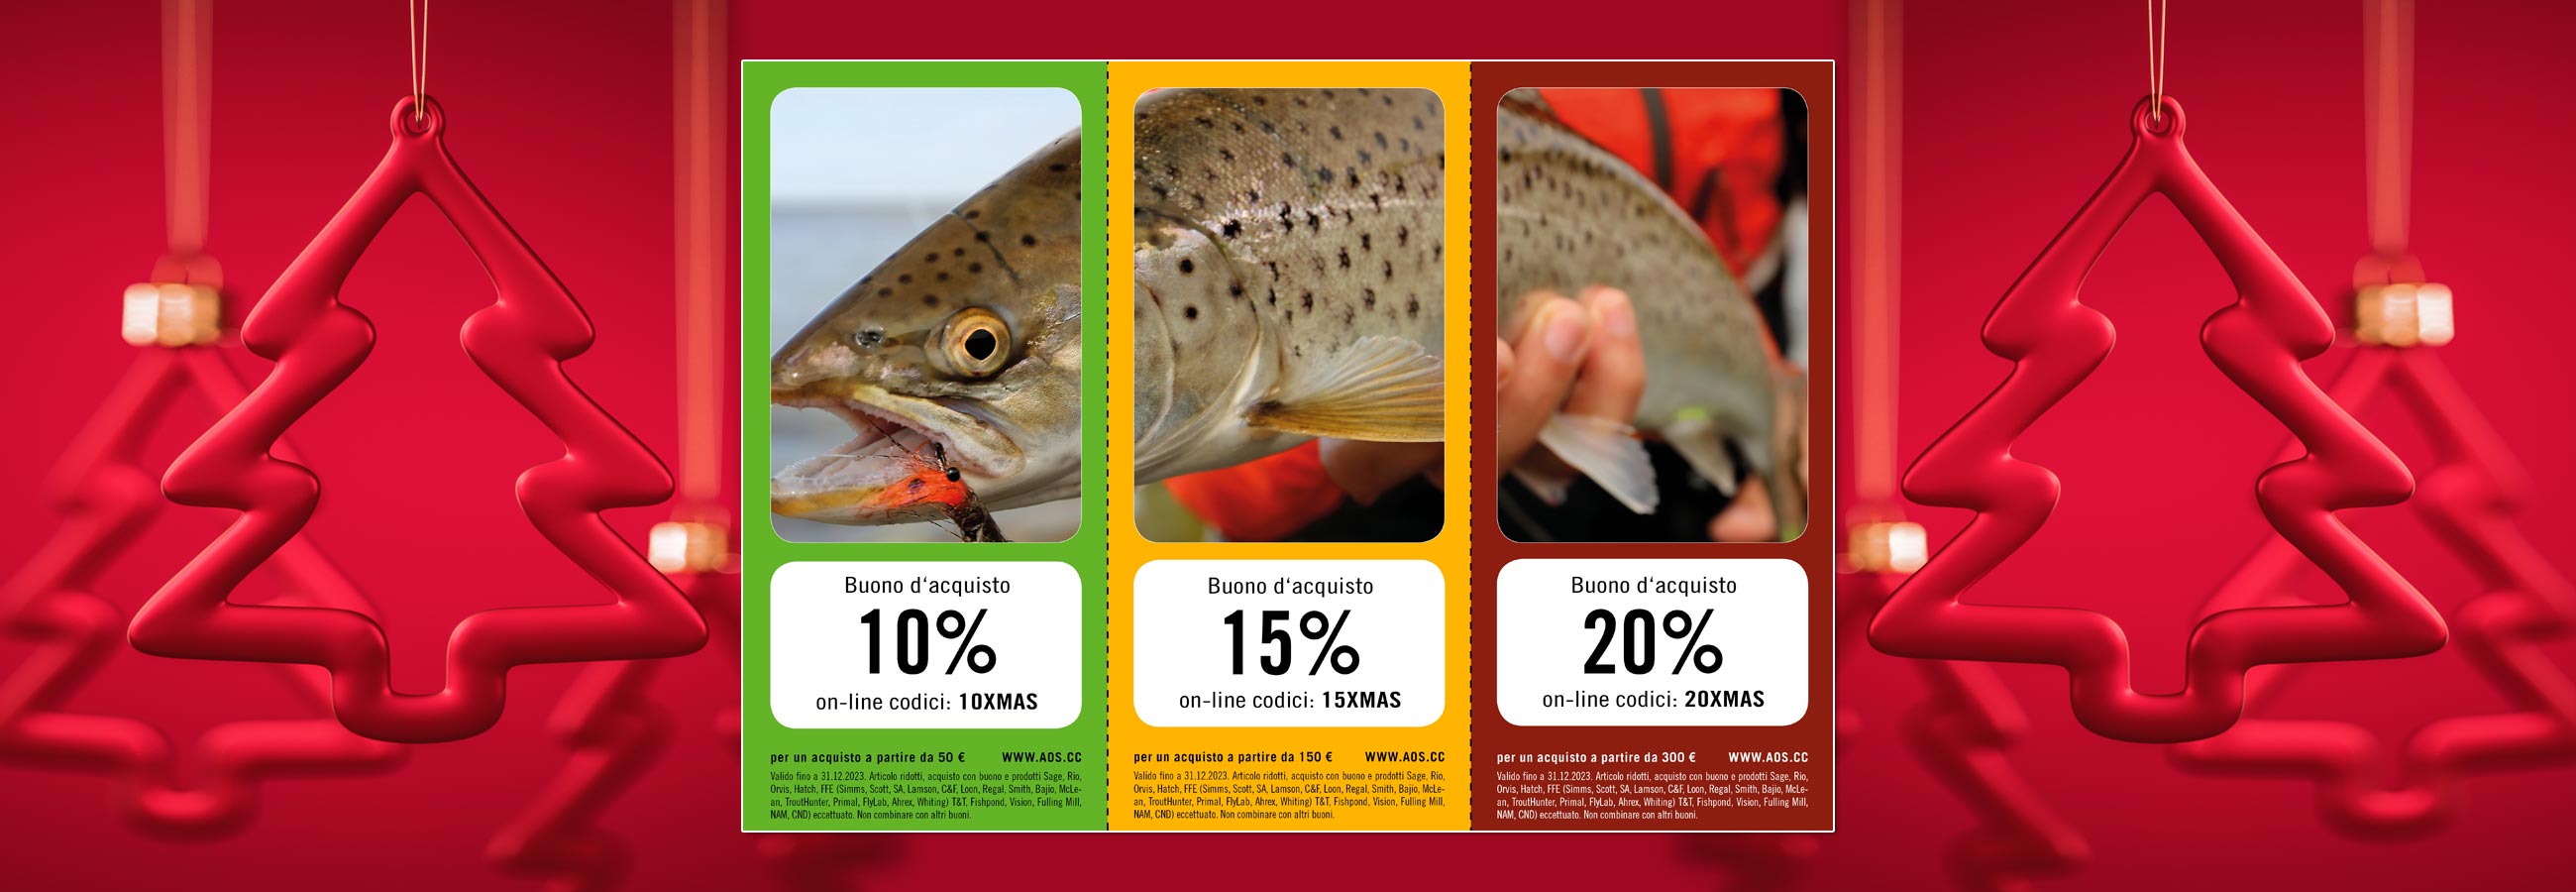 Pesca a mosca - Costruzione mosche - fino al 20% di sconto sul tuo prossimo acquisto! Buono d'acquisto di Natale AOS